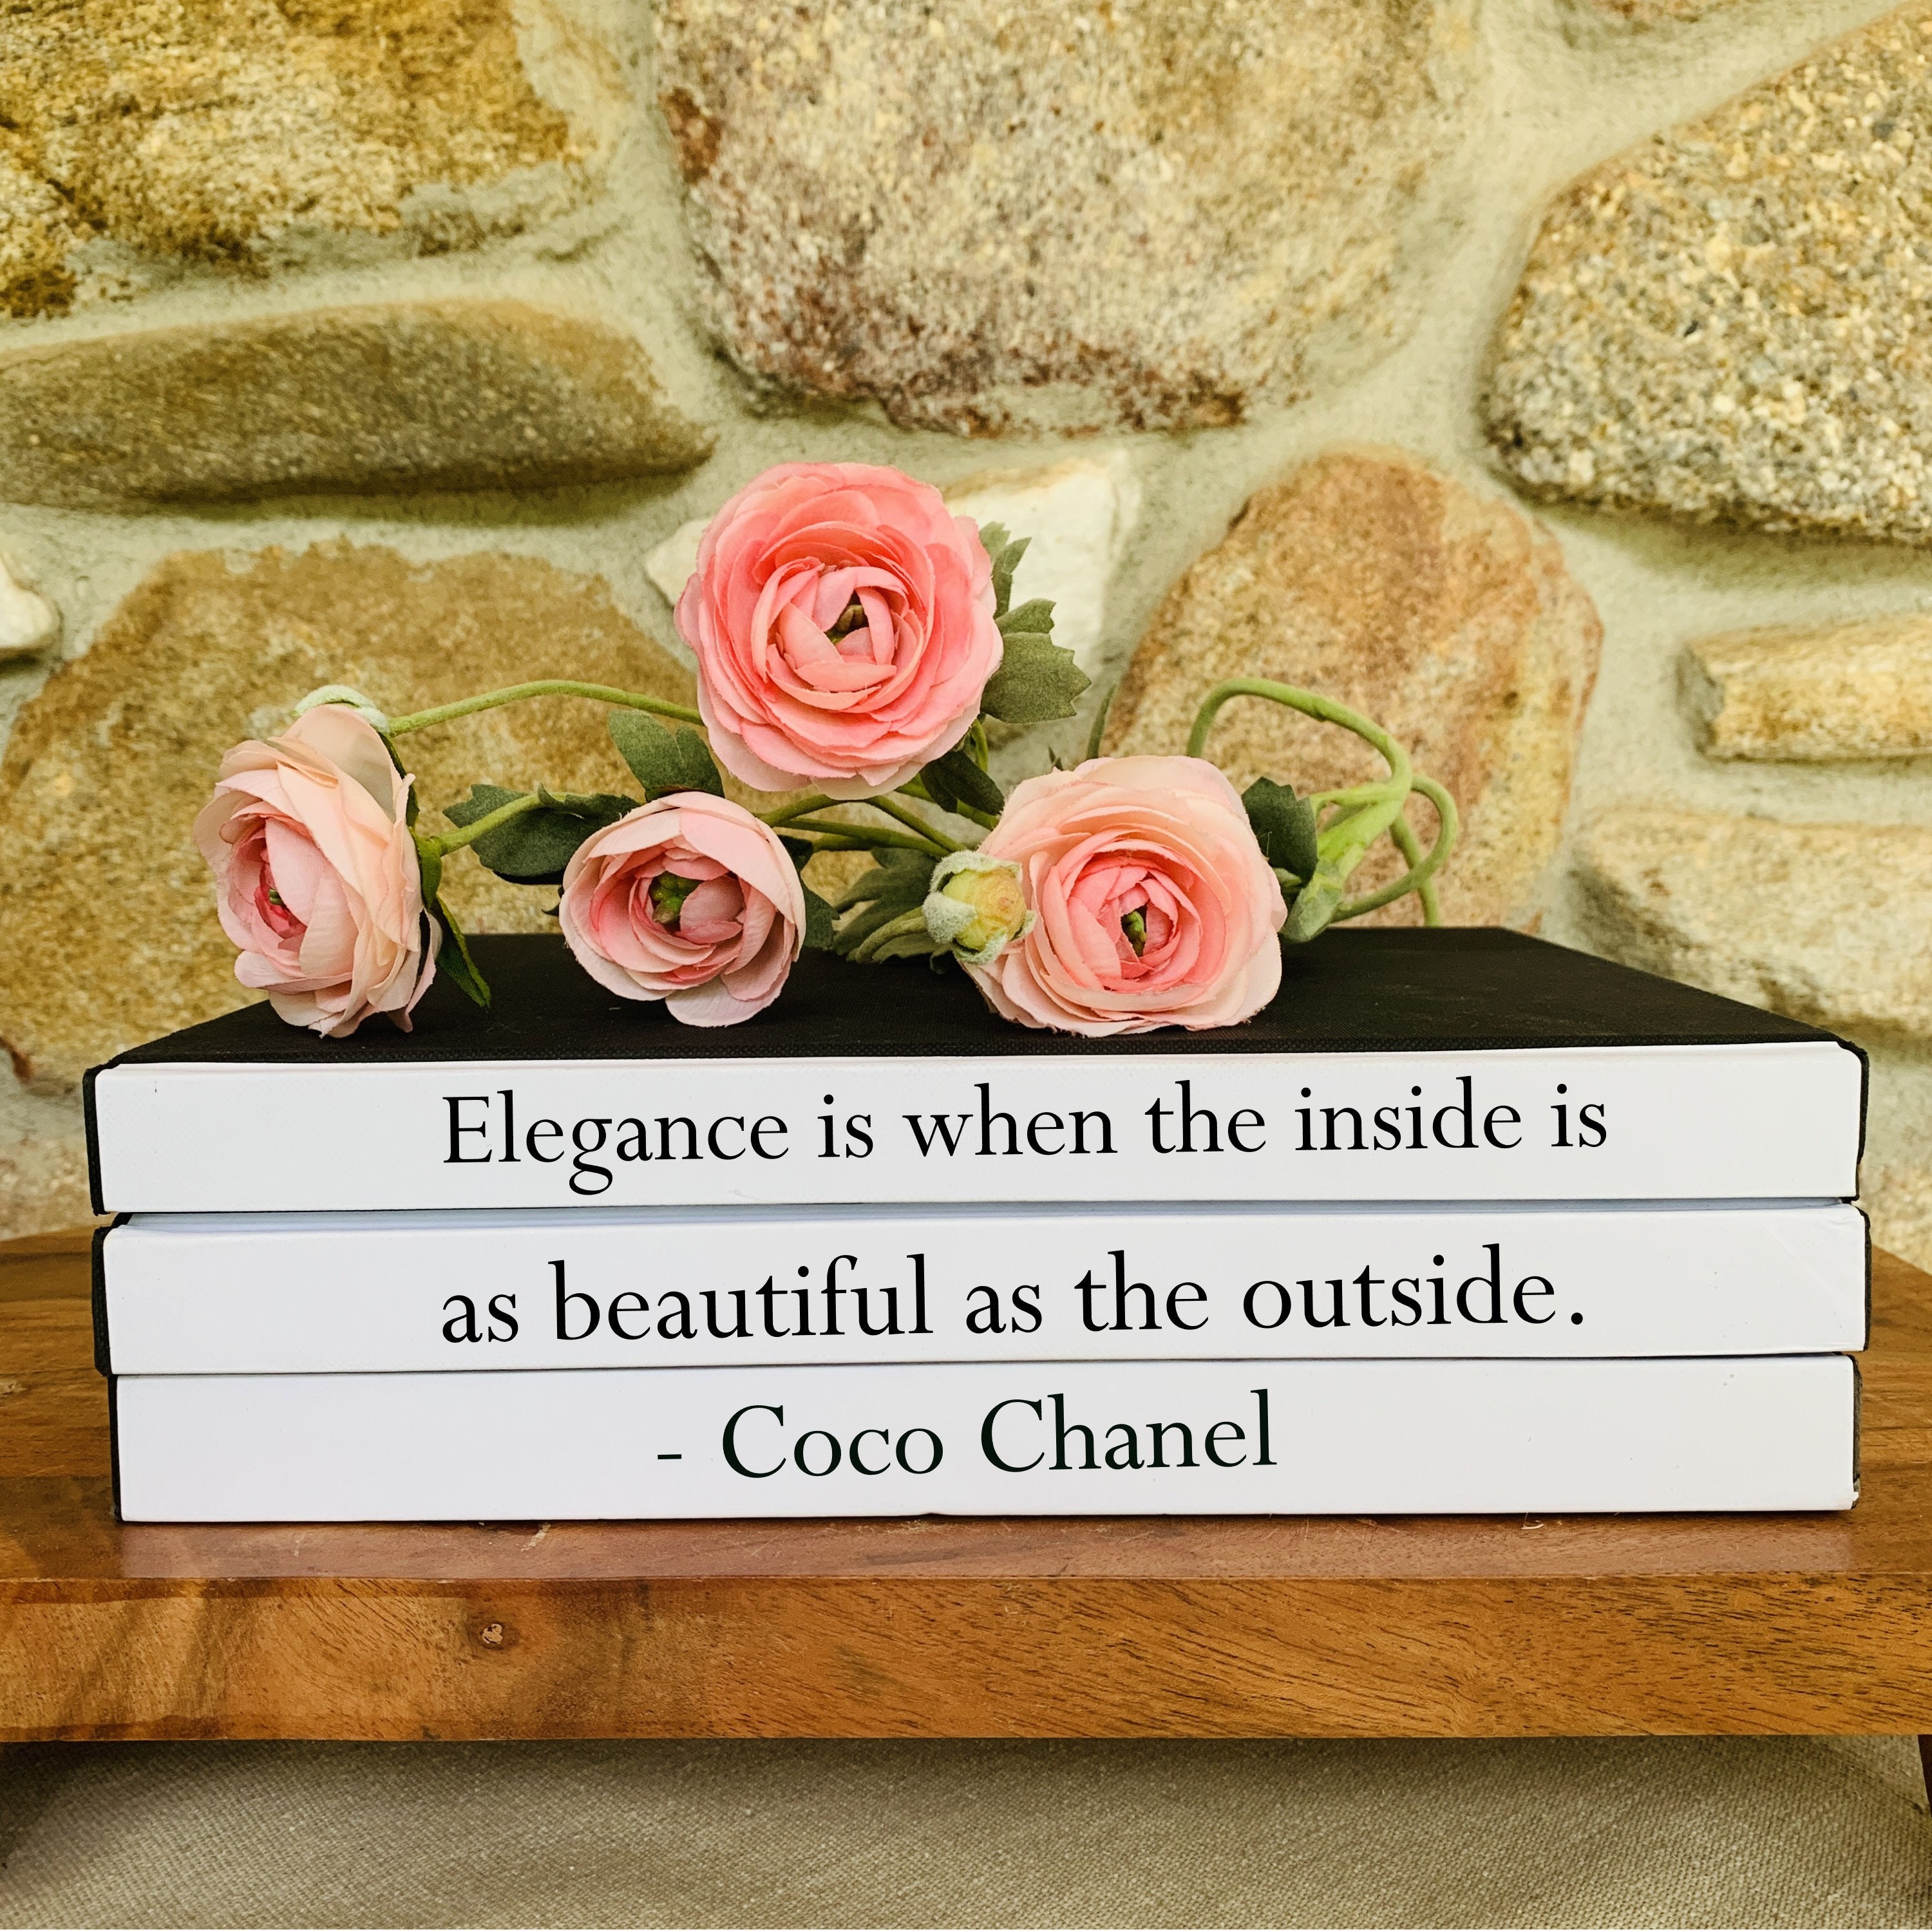 Coffee Table Book Stack, Coco Chanel Quote, Fashion Designer Books